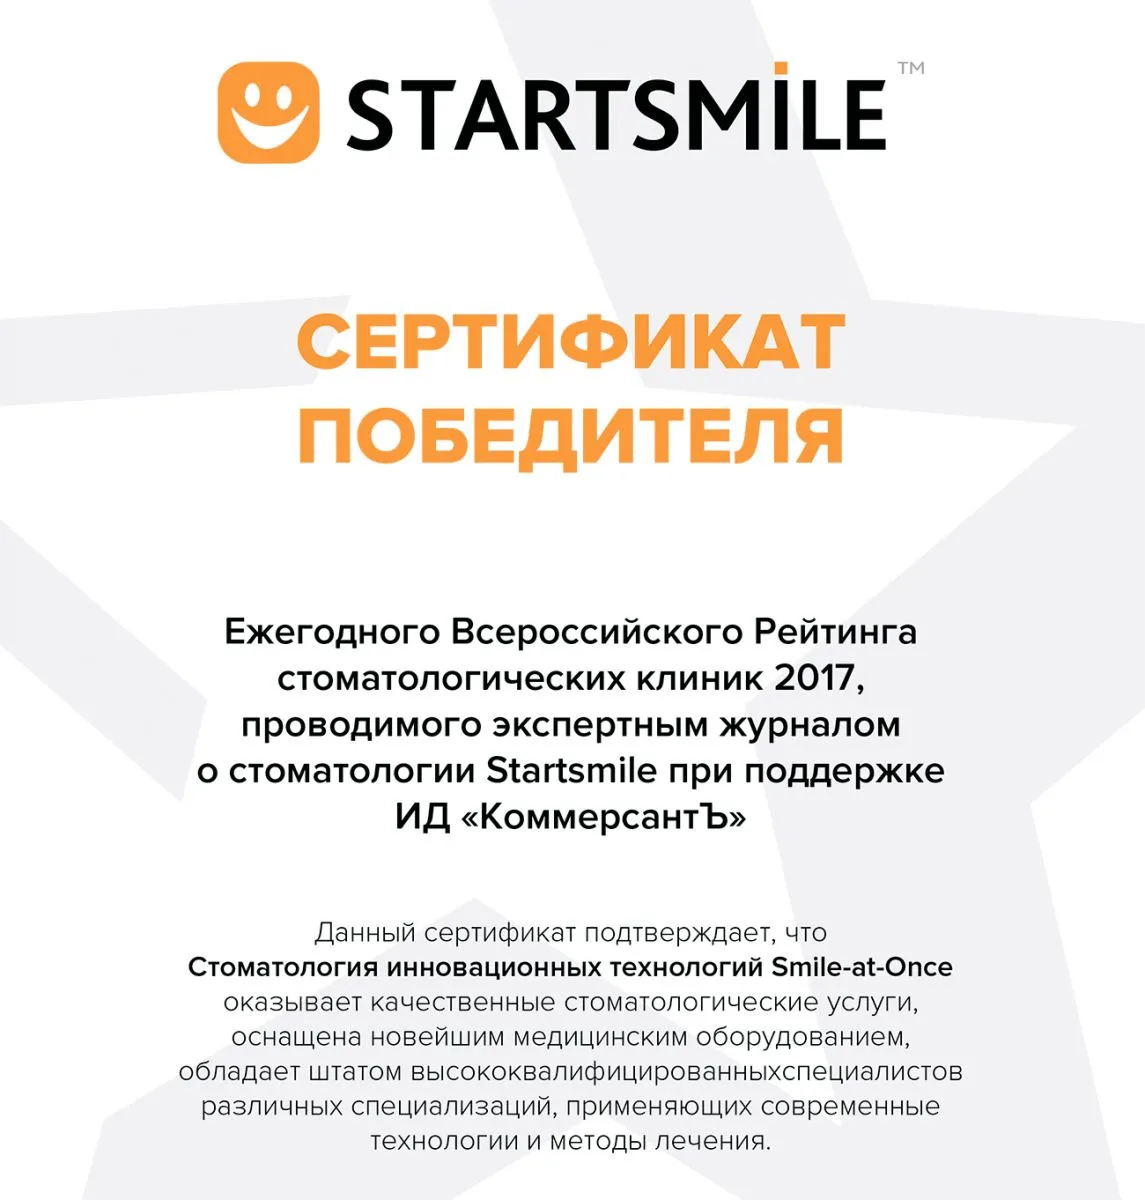 Применение элайнеров Star Smile для исправления прикуса